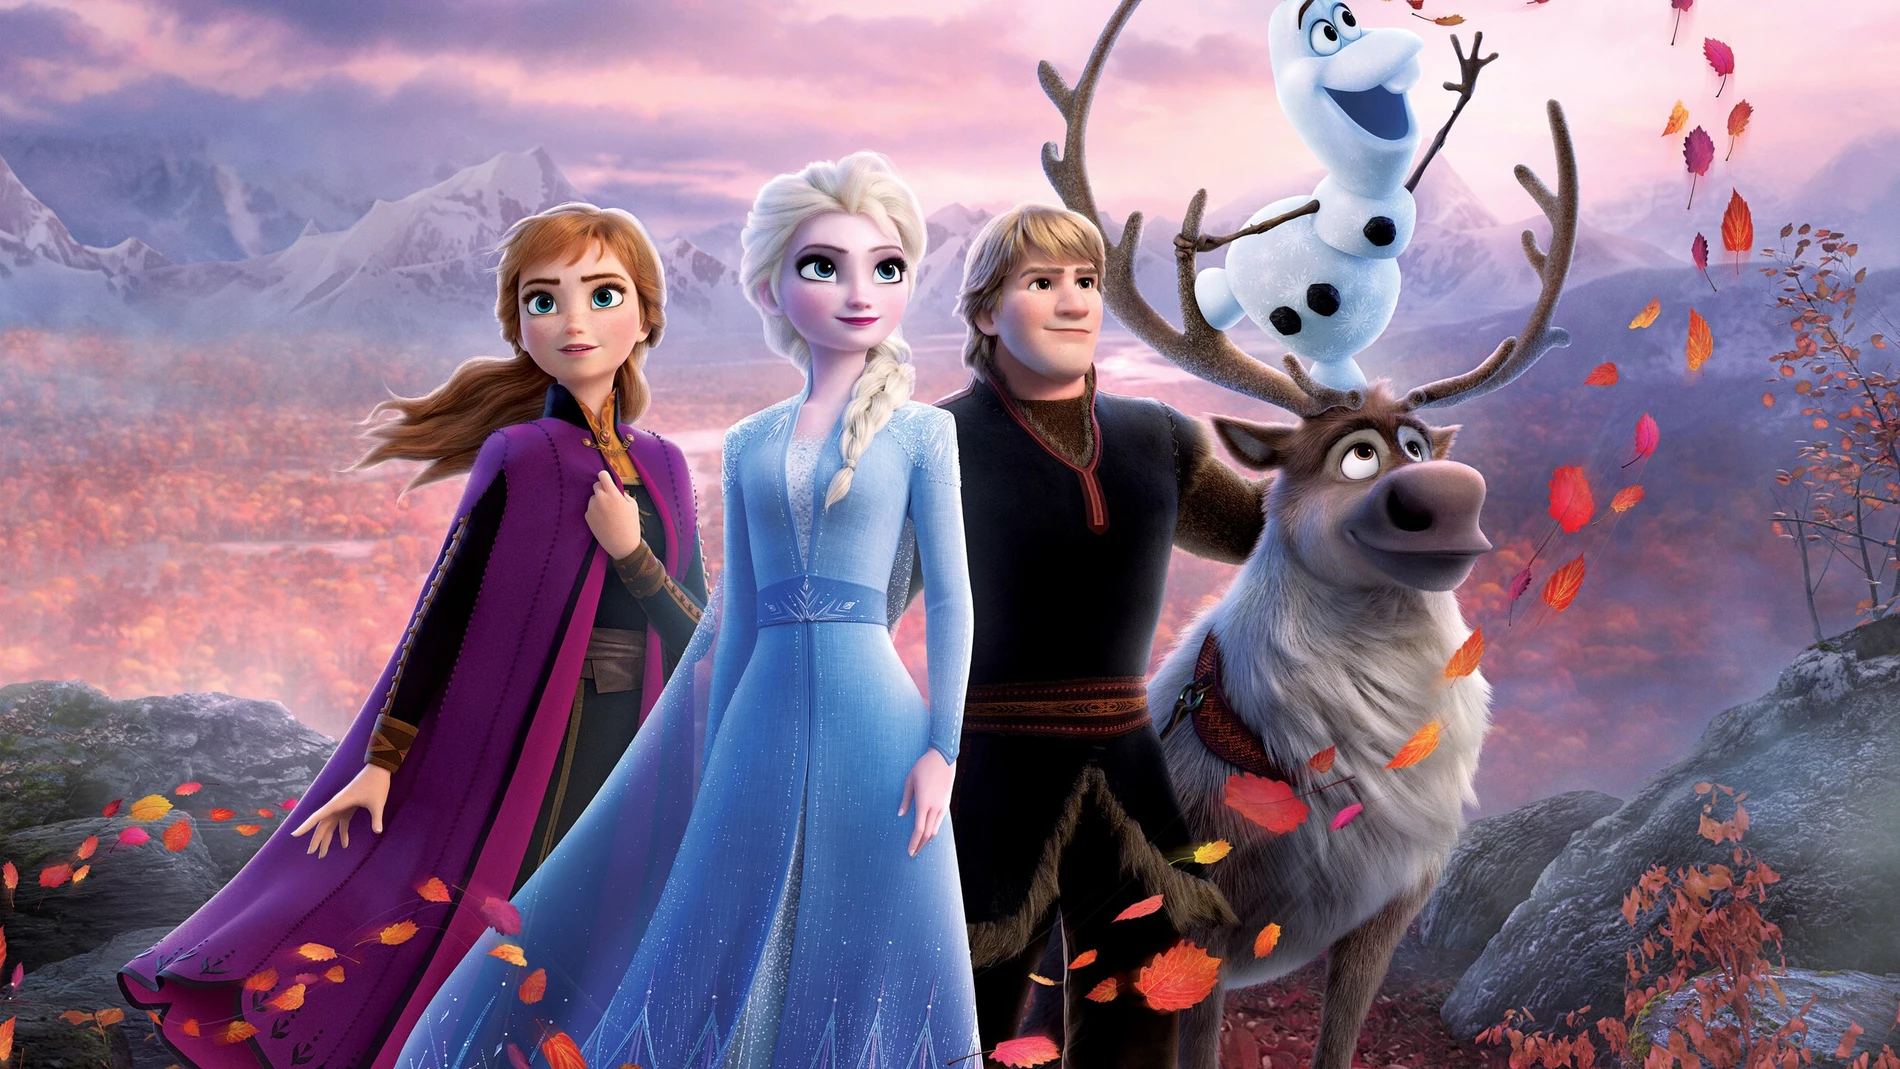 Cartel promocional de la película Frozen II